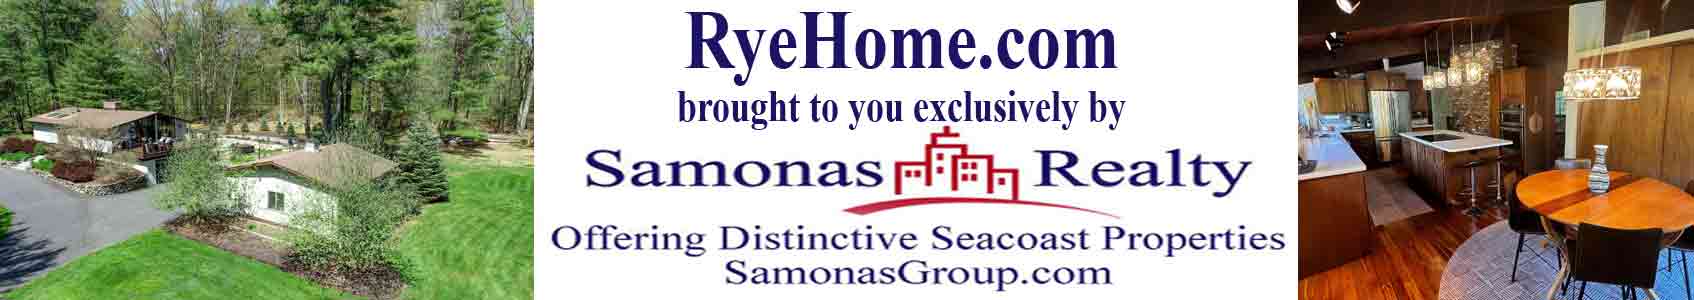 RyeHome_Logo.com